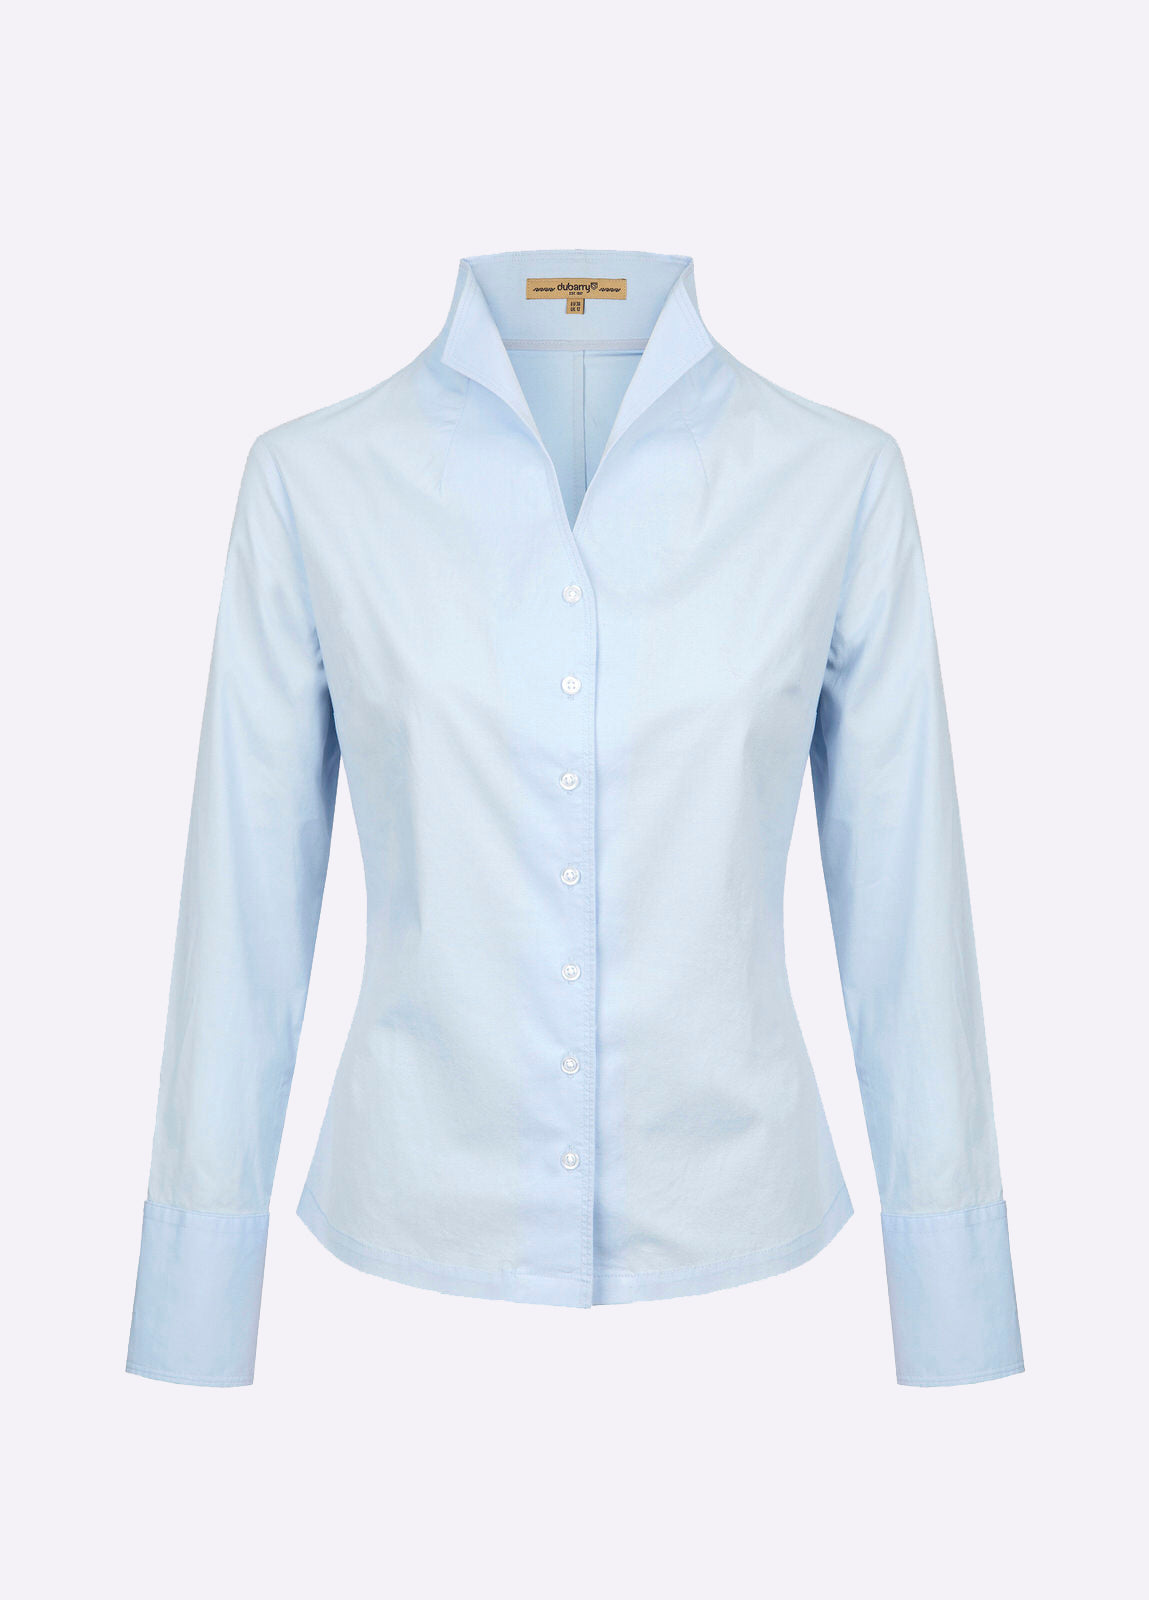 DUBARRY Snowdrop Shirt - Women's - Pale Blue